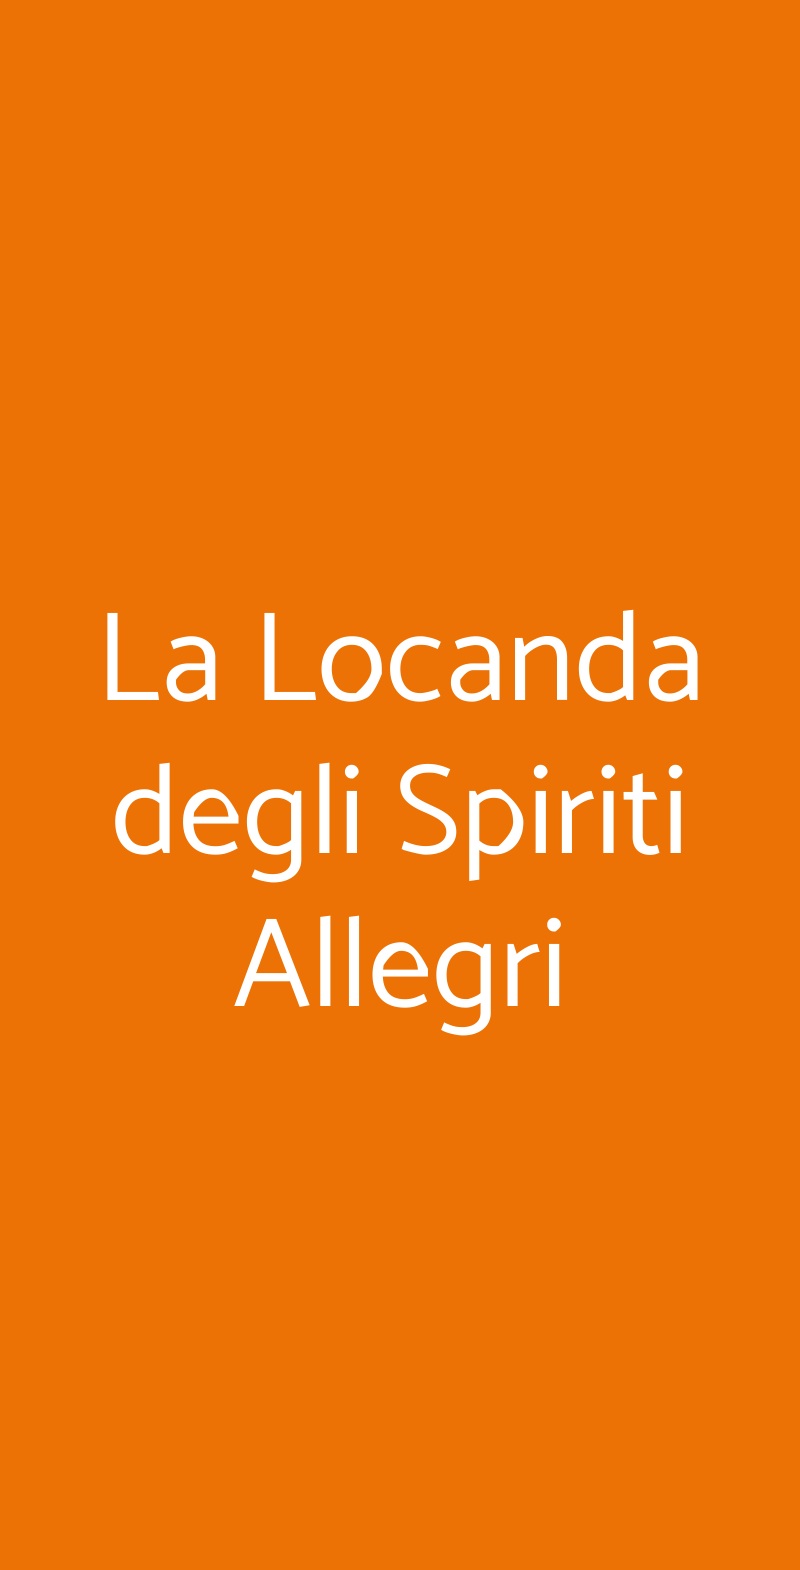 La Locanda degli Spiriti Allegri Roma menù 1 pagina